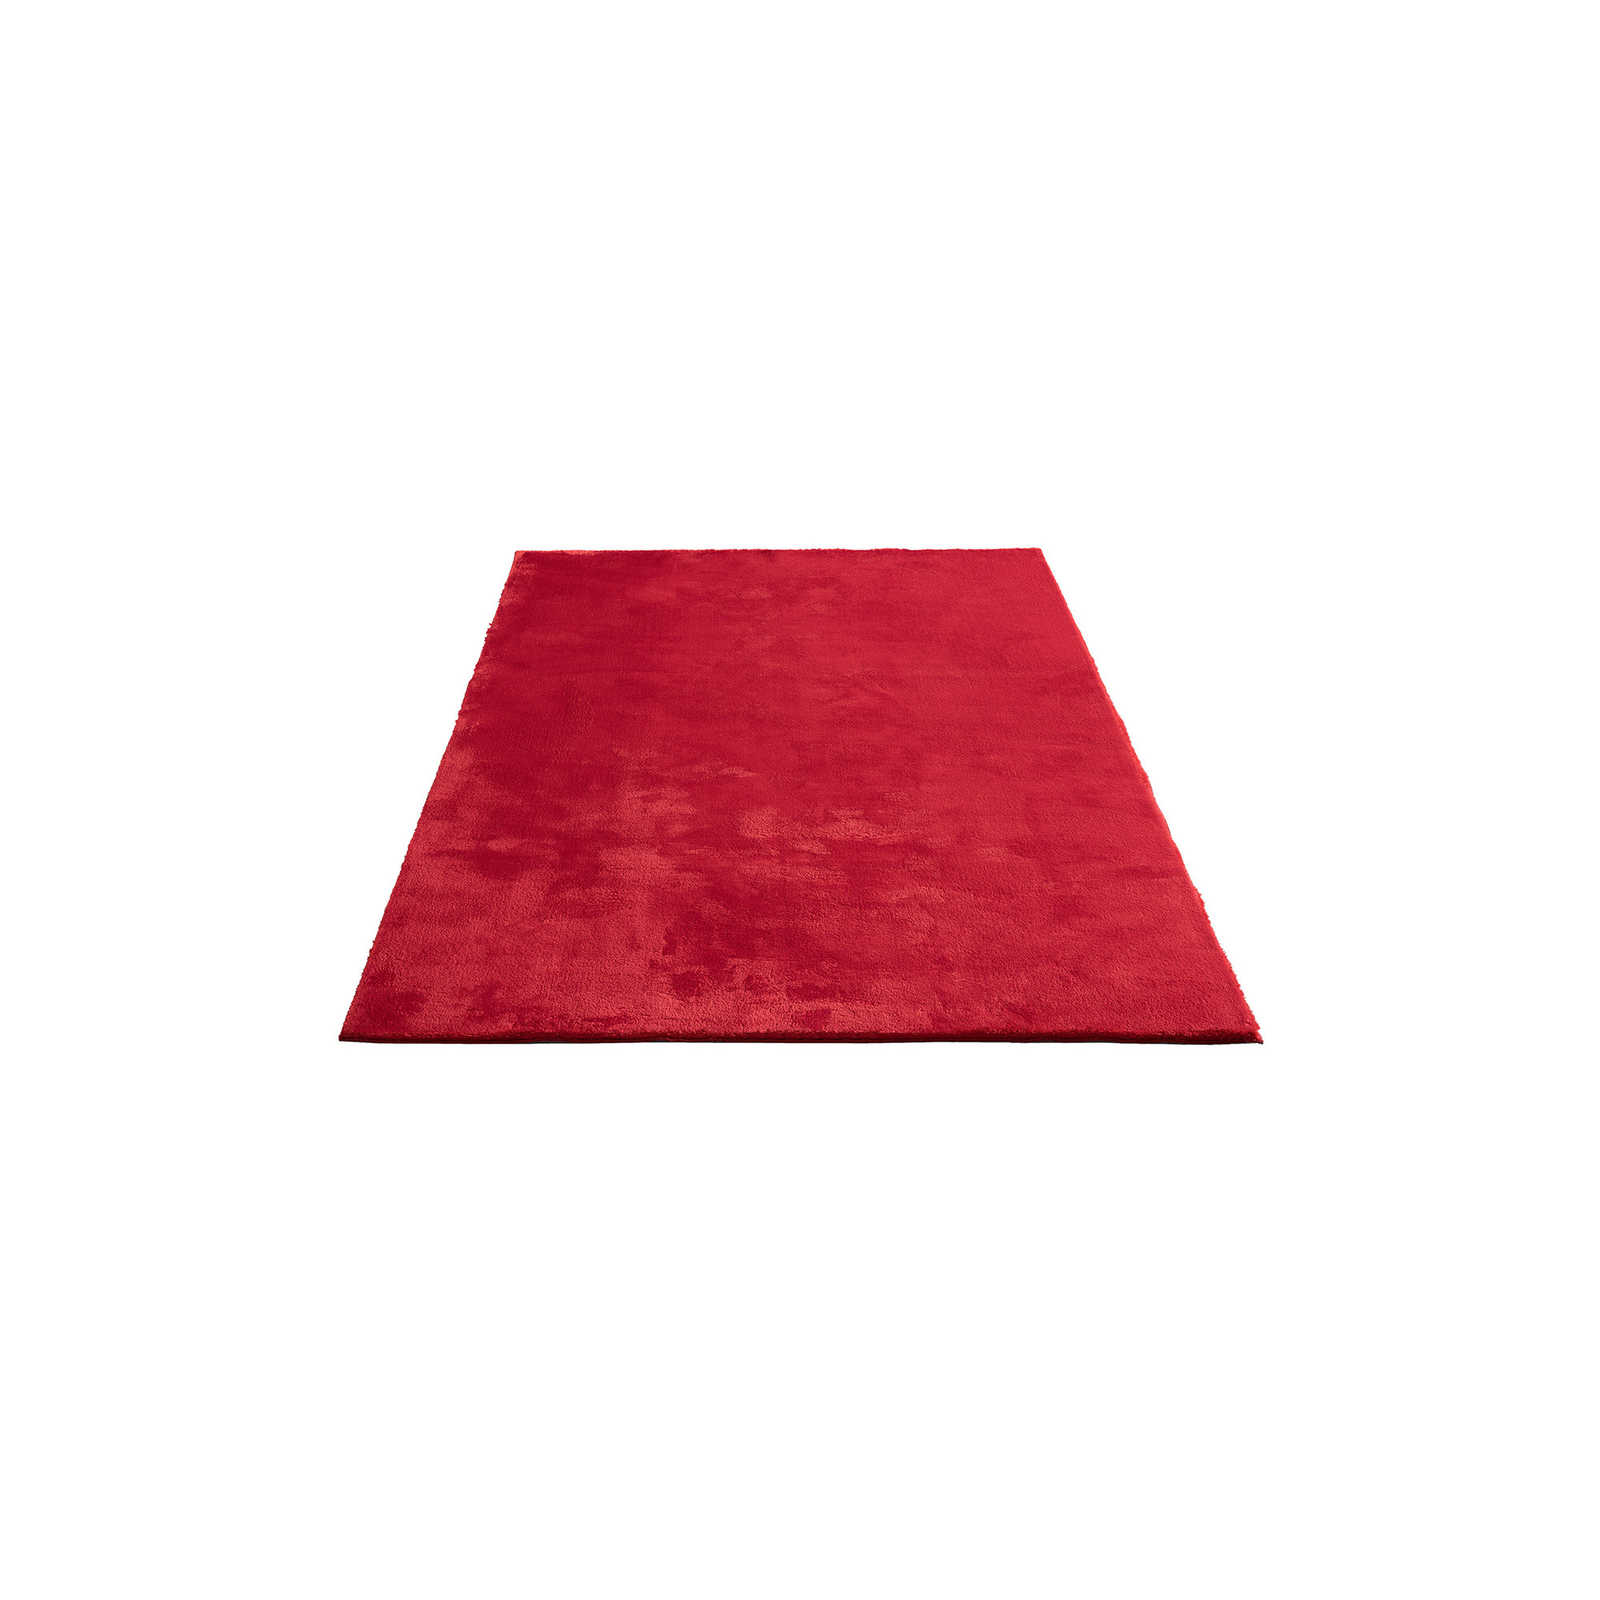 Besonders weicher Hochflor Teppich in Rot – 170 x 120 cm
